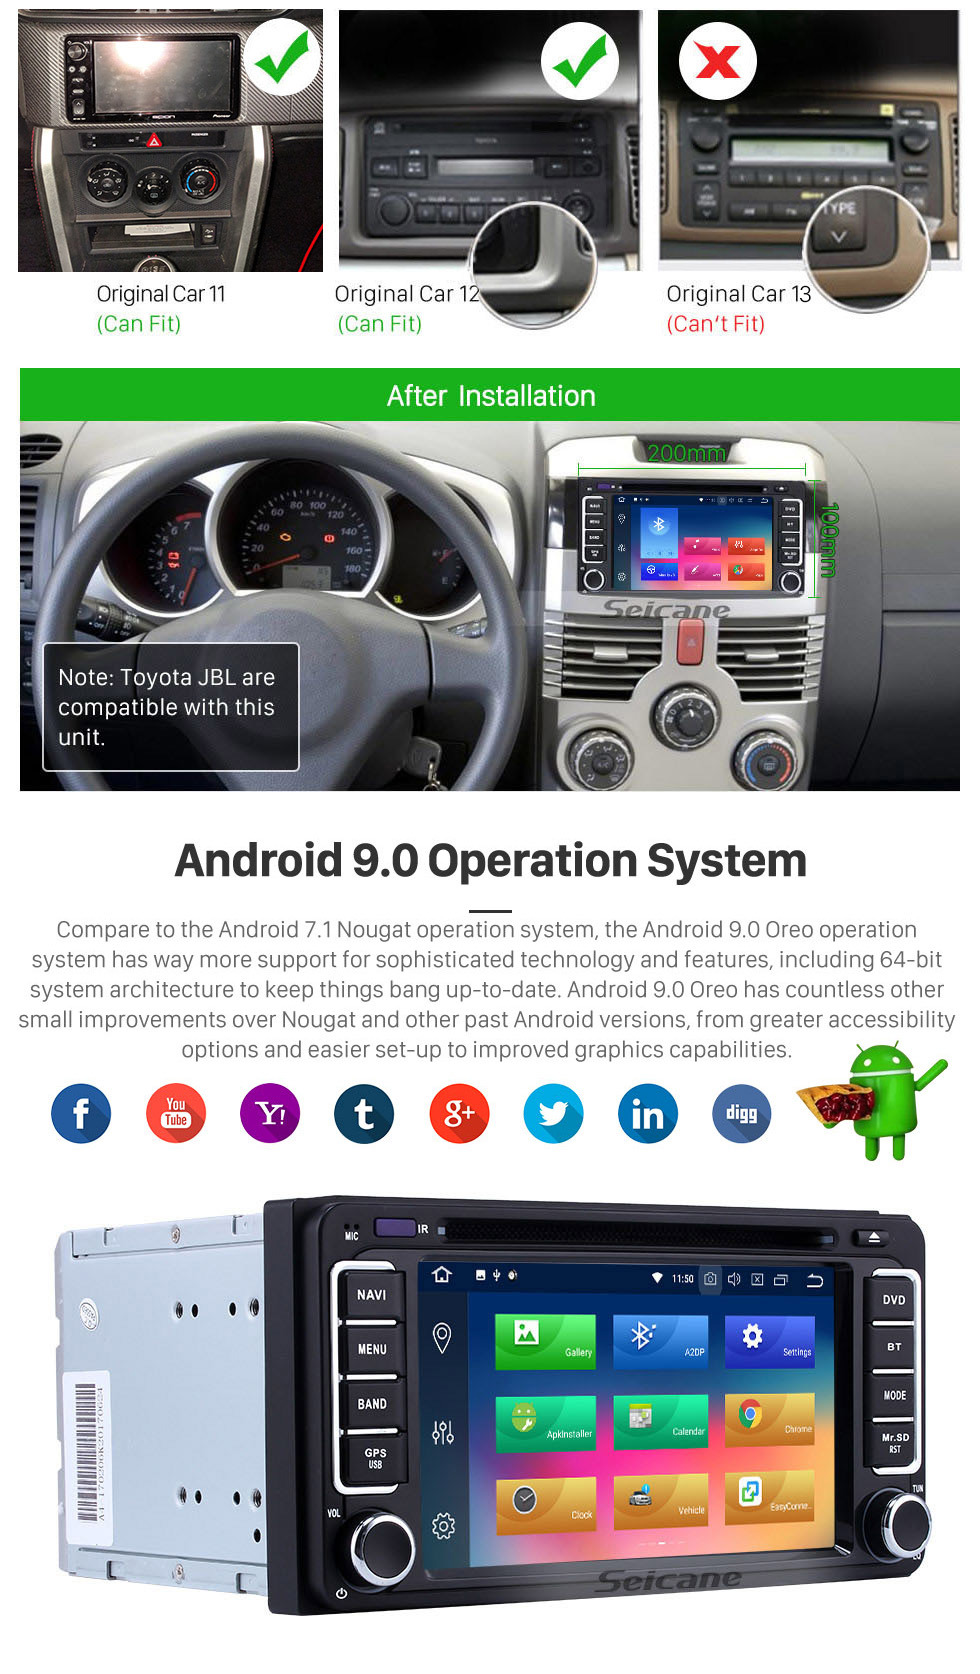 Seicane OEM Android 9.0 Carro estéreo GPS Sistema para 1996-2001 TOYOTA RAV4 Camry Corolla Vitz Echo Terios Land Cruiser com Bluetooth Rádio DVD 3G WiFi OBD2 ligação de espelho 